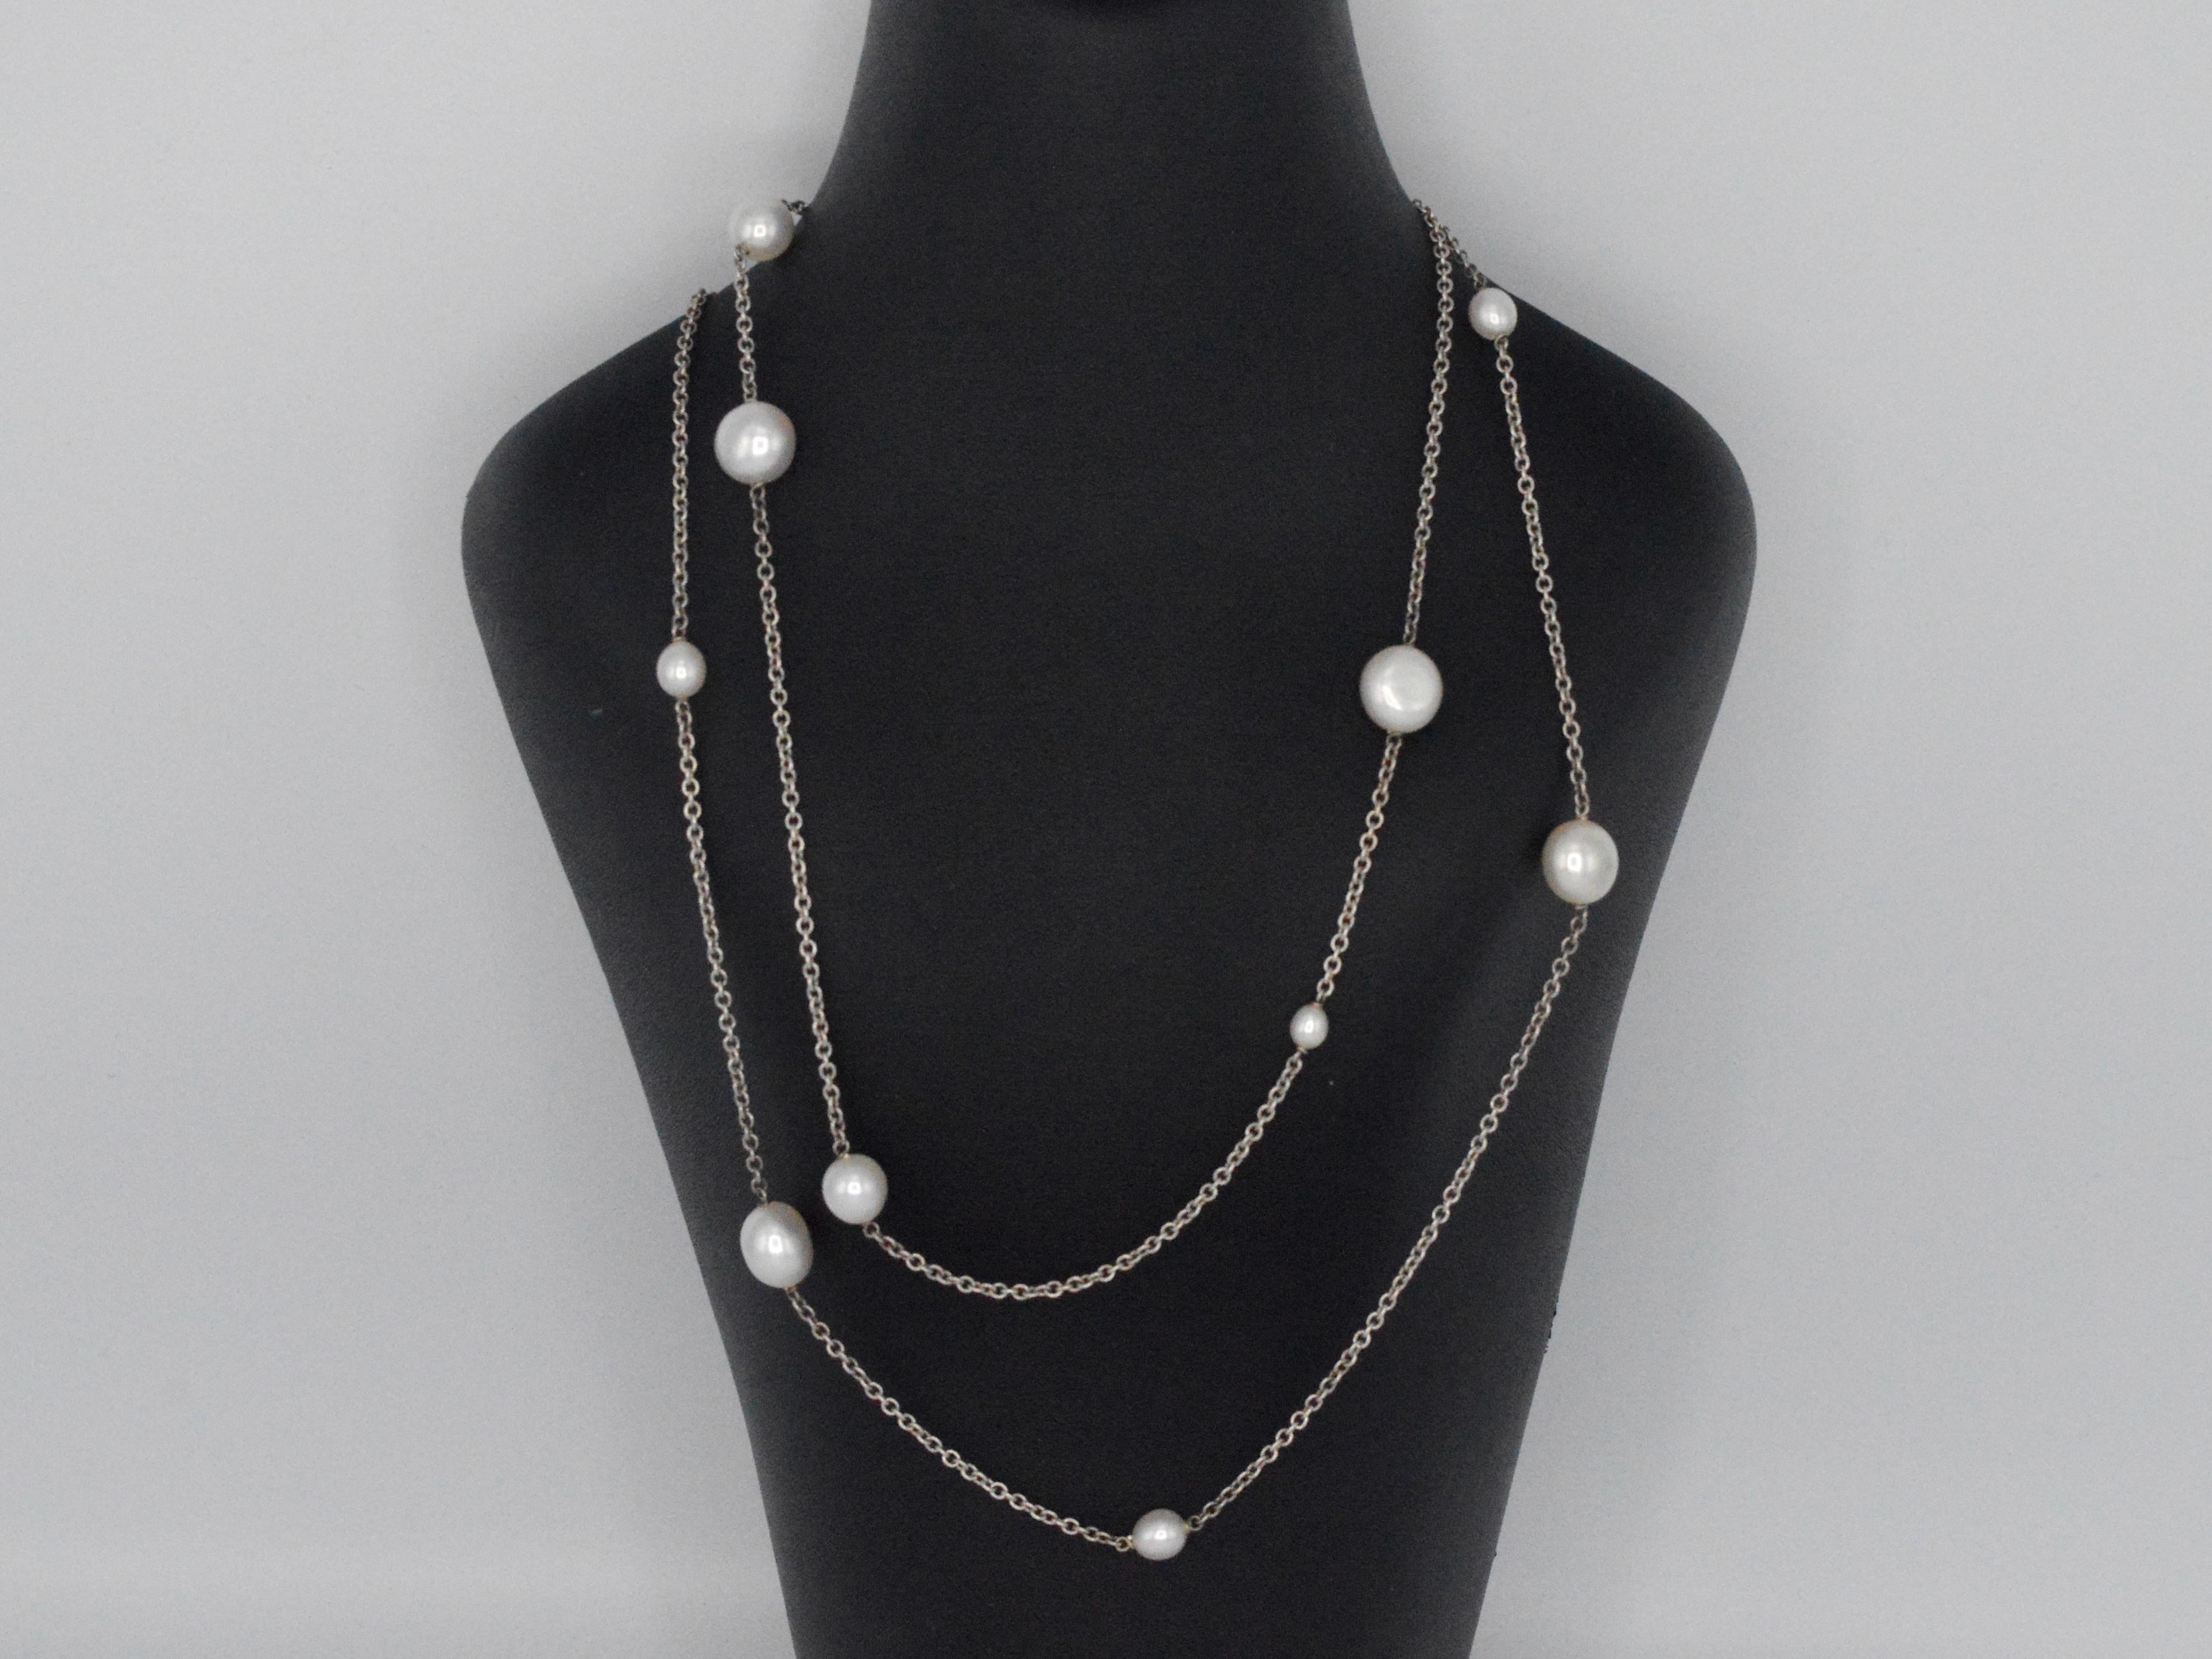 Voici le collier de perles Peretti de Tiffany & Co, symbole d'une élégance et d'une sophistication intemporelles. Fabriqué en argent 925, ce collier exquis pèse 17,3 grammes et mesure 90 cm de long, ce qui lui confère polyvalence et style. Présenté